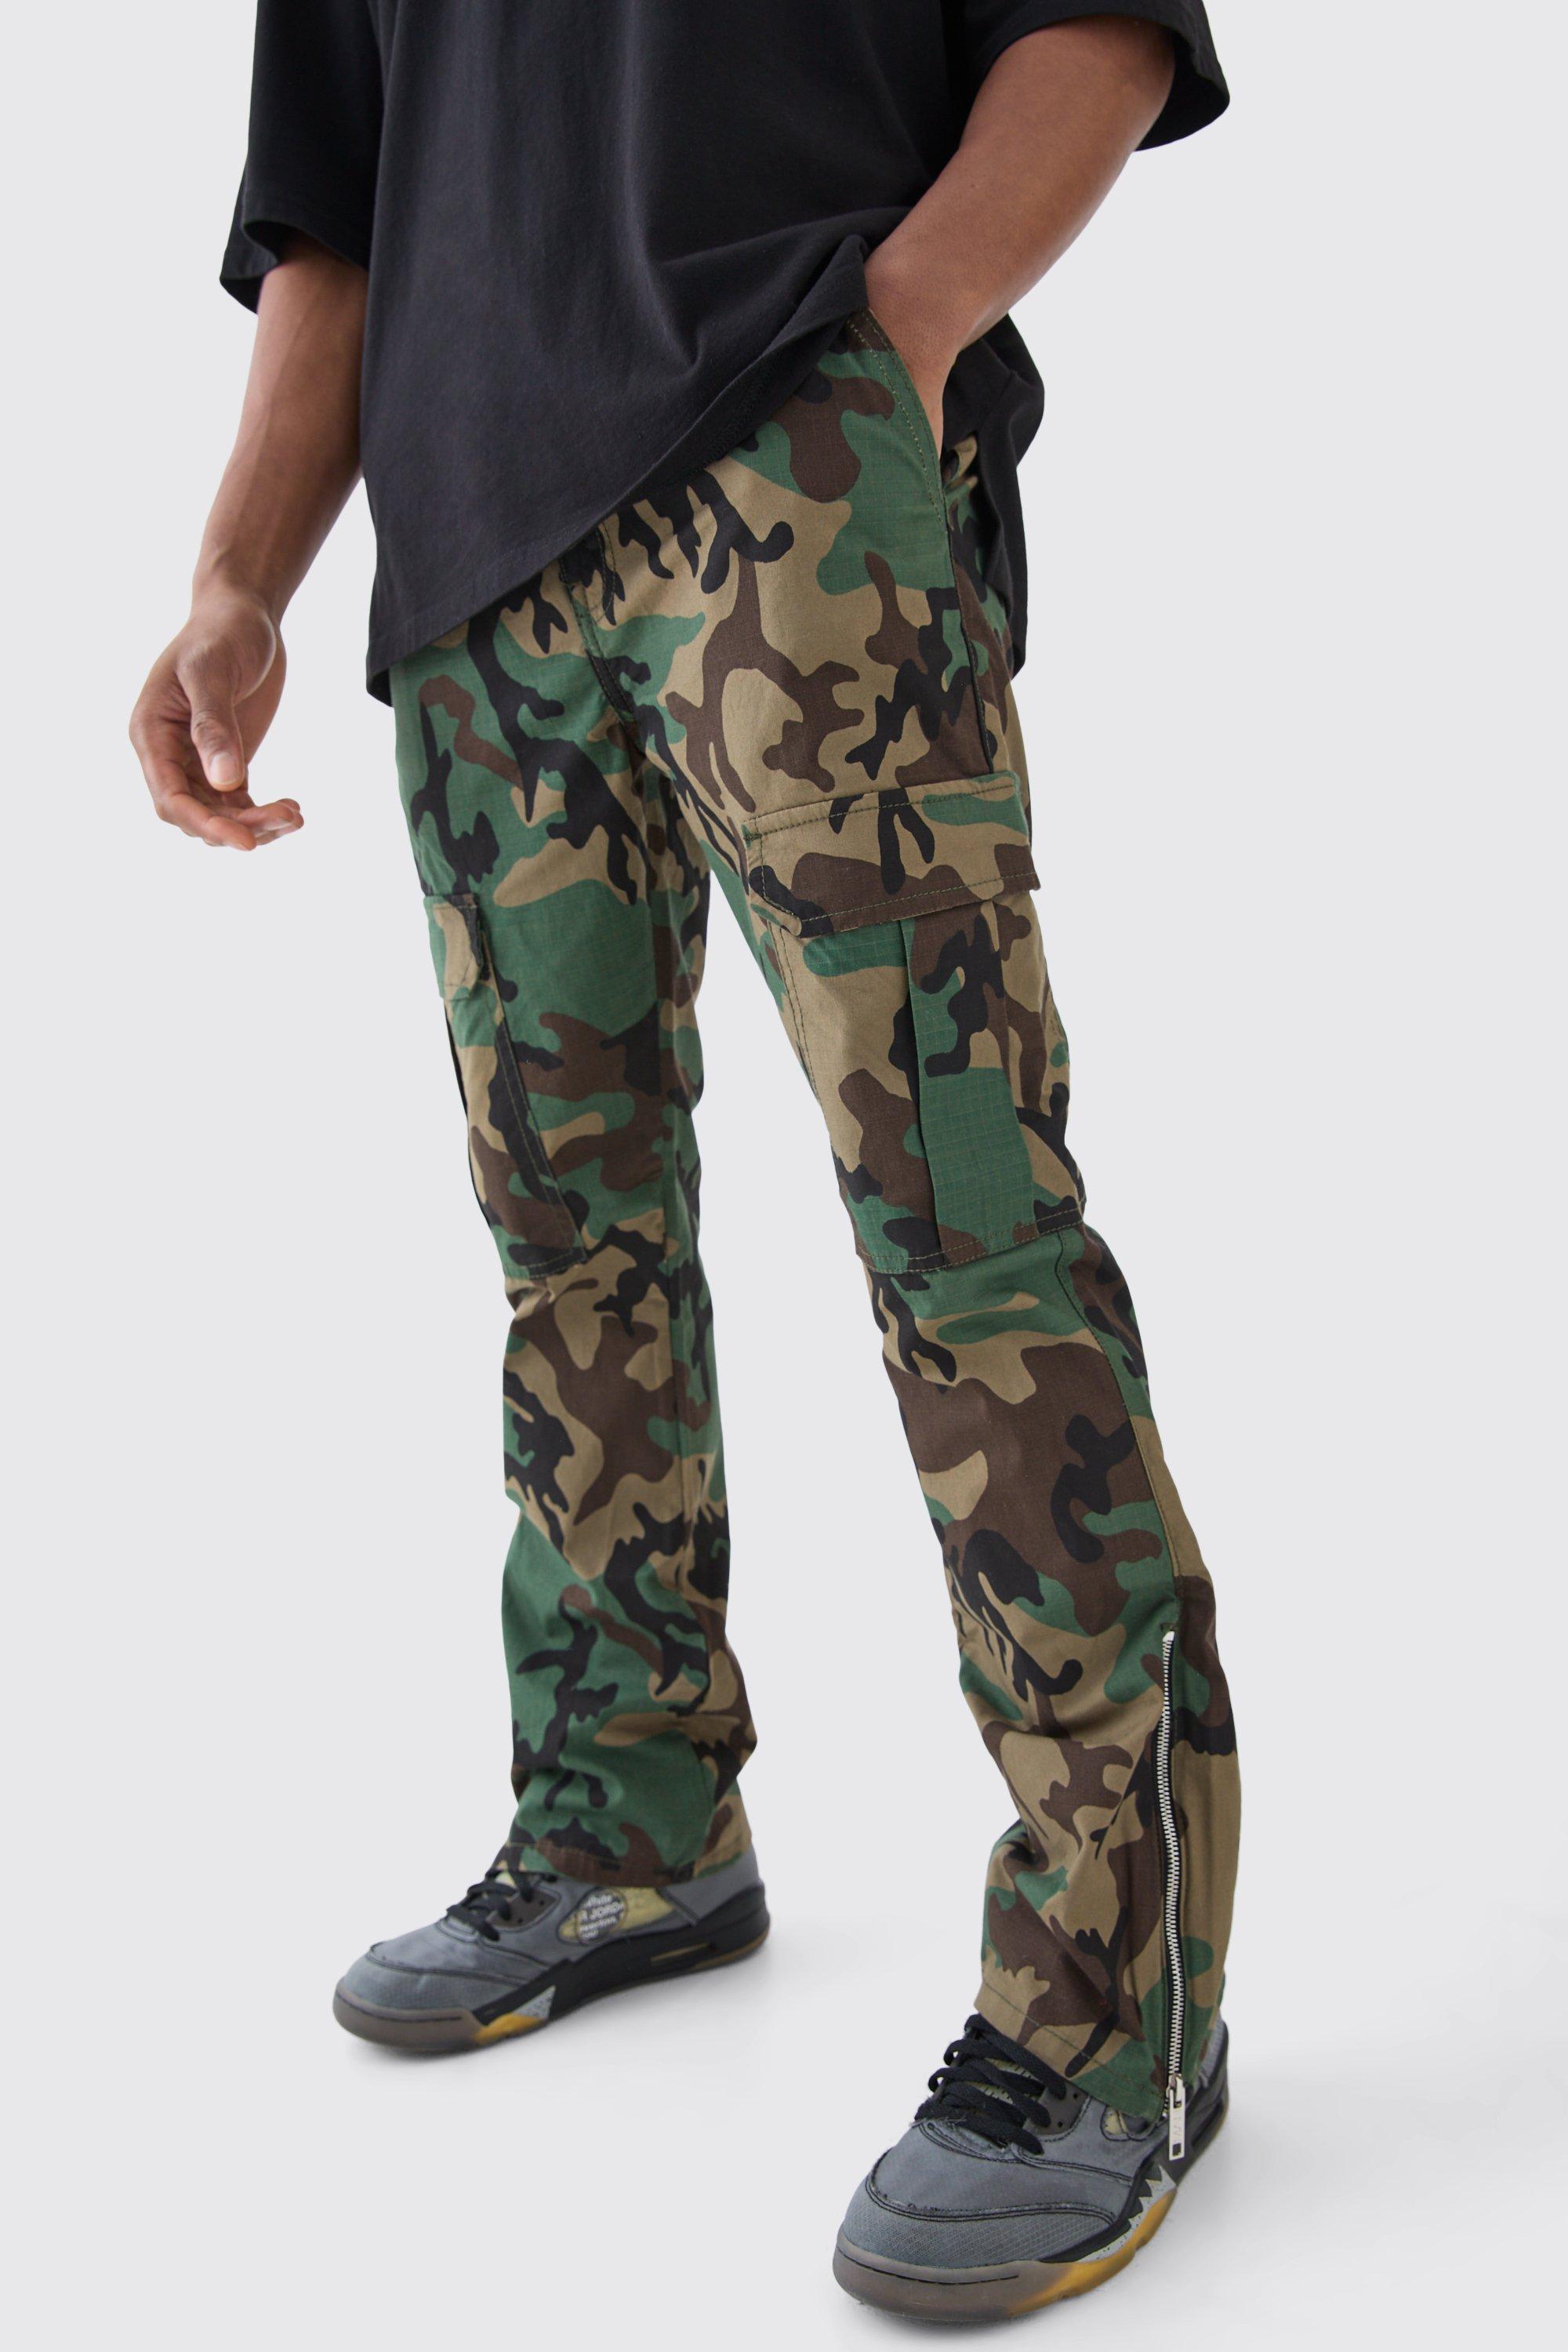 Image of Pantaloni Cargo Slim Fit a zampa in nylon ripstop in fantasia militare con inserti e zip, Verde